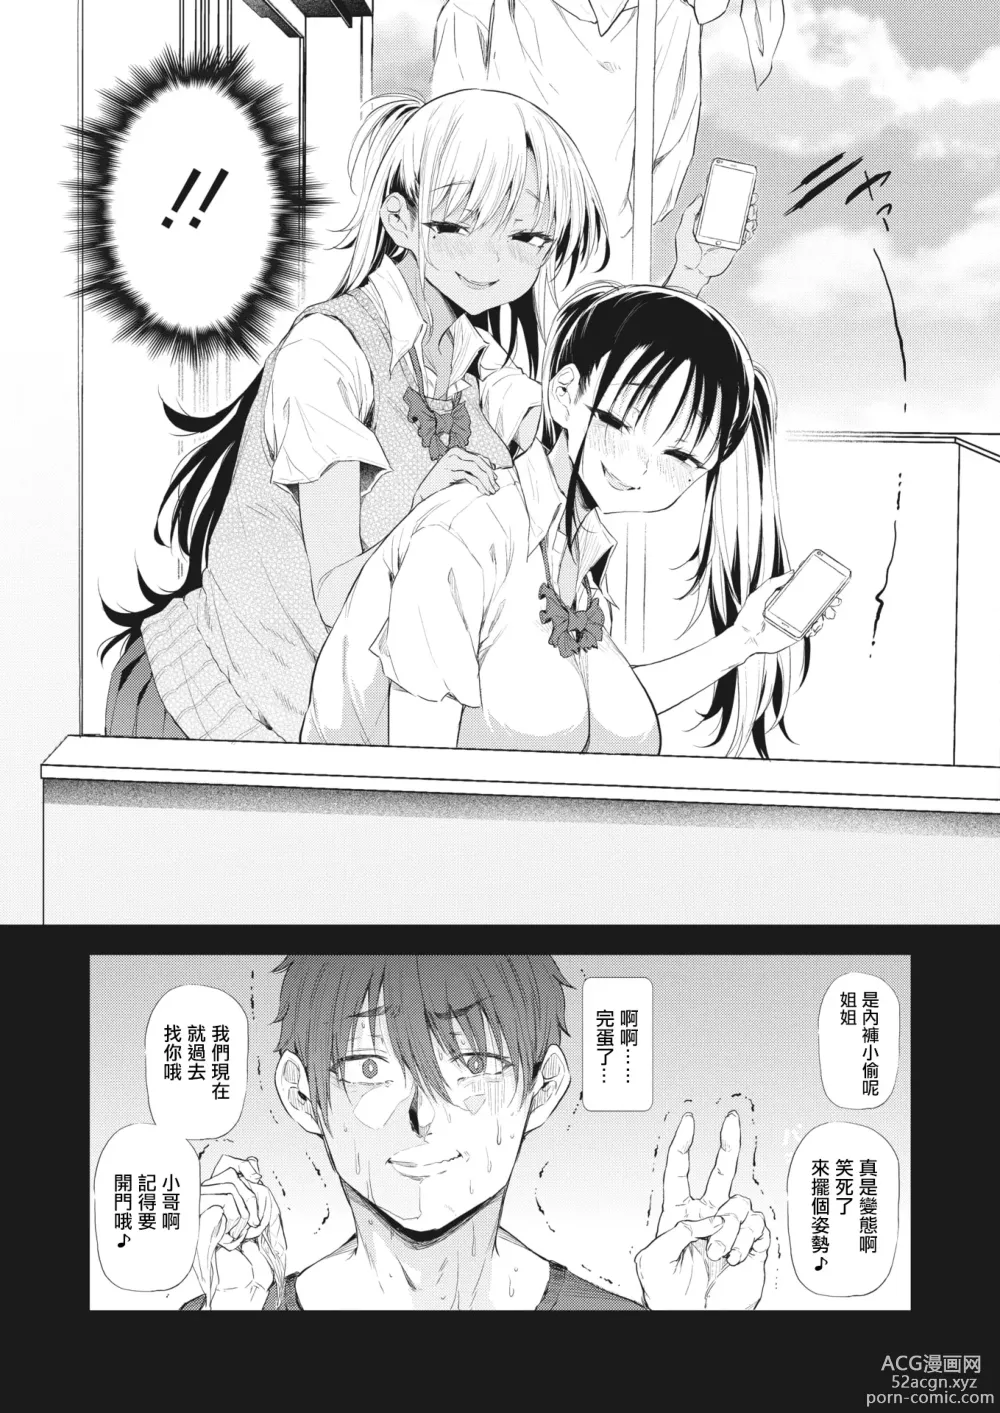 Page 5 of manga Totte Torarete  Shirokuro Gal  Shimai